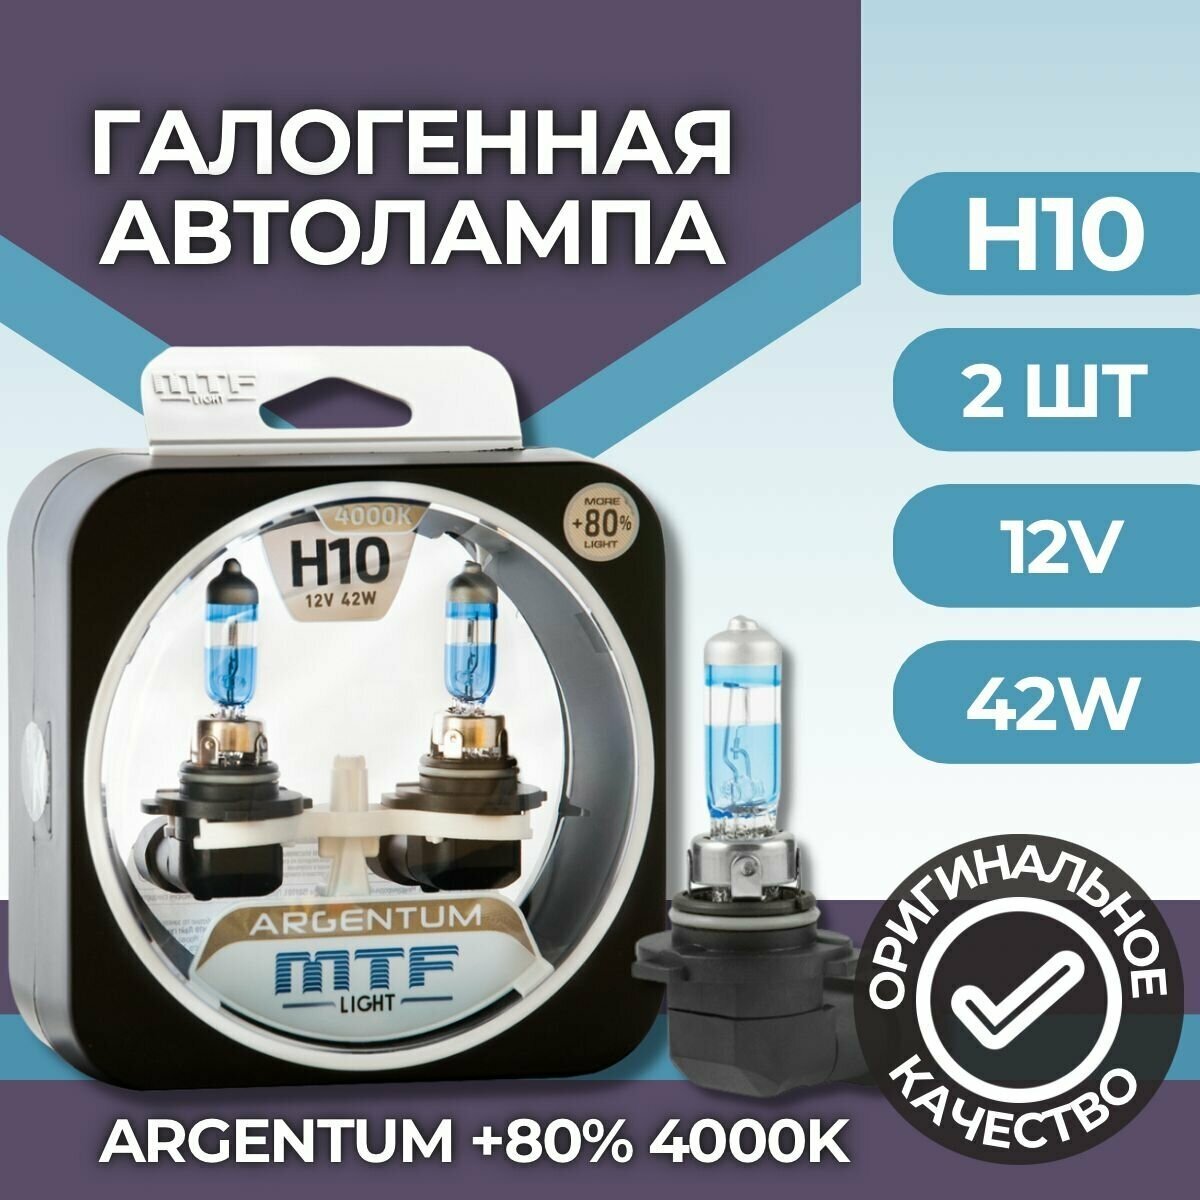 Лампа галогеновая MTF Light Argentum+80% H10, 12В, 42Вт